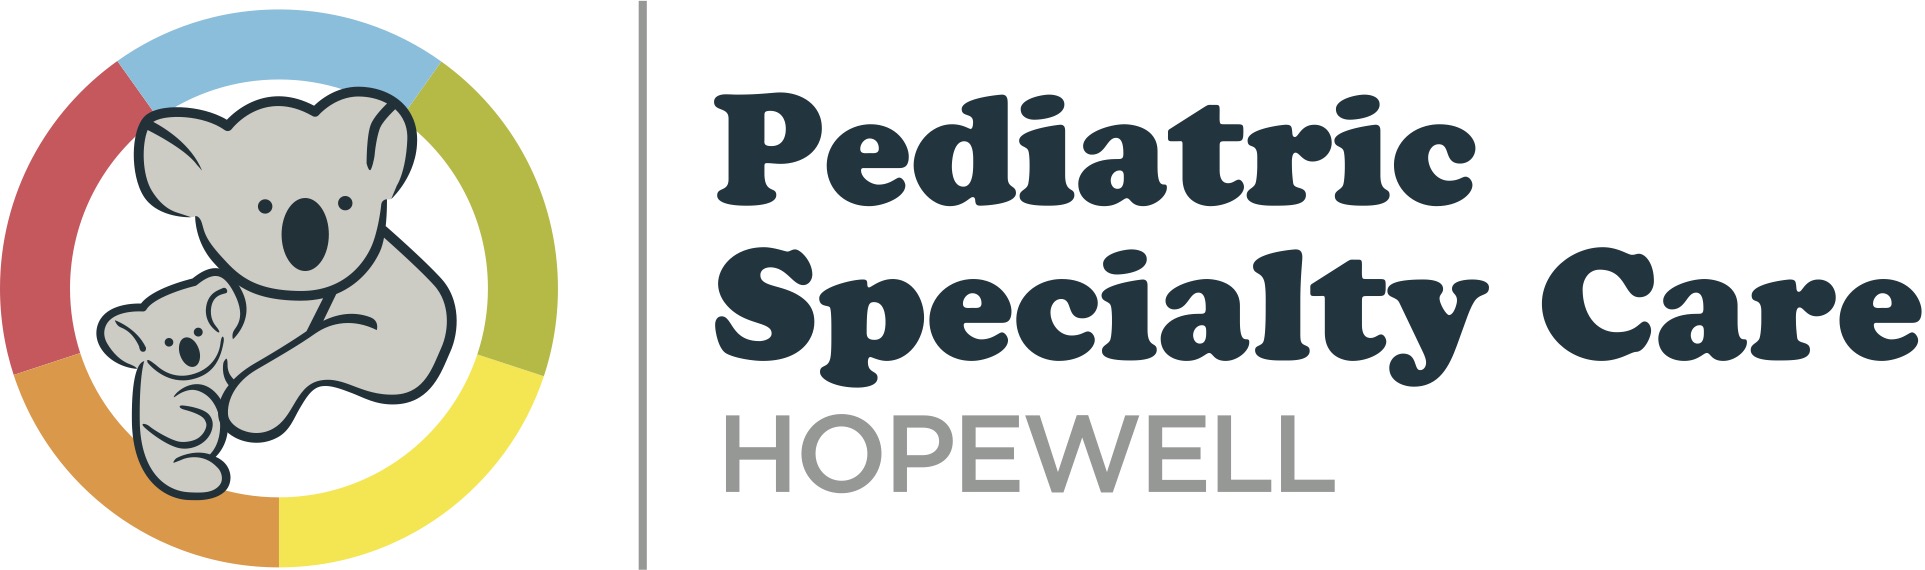 Aliquippa, PA - Pediatric Specialty Care | Location logo